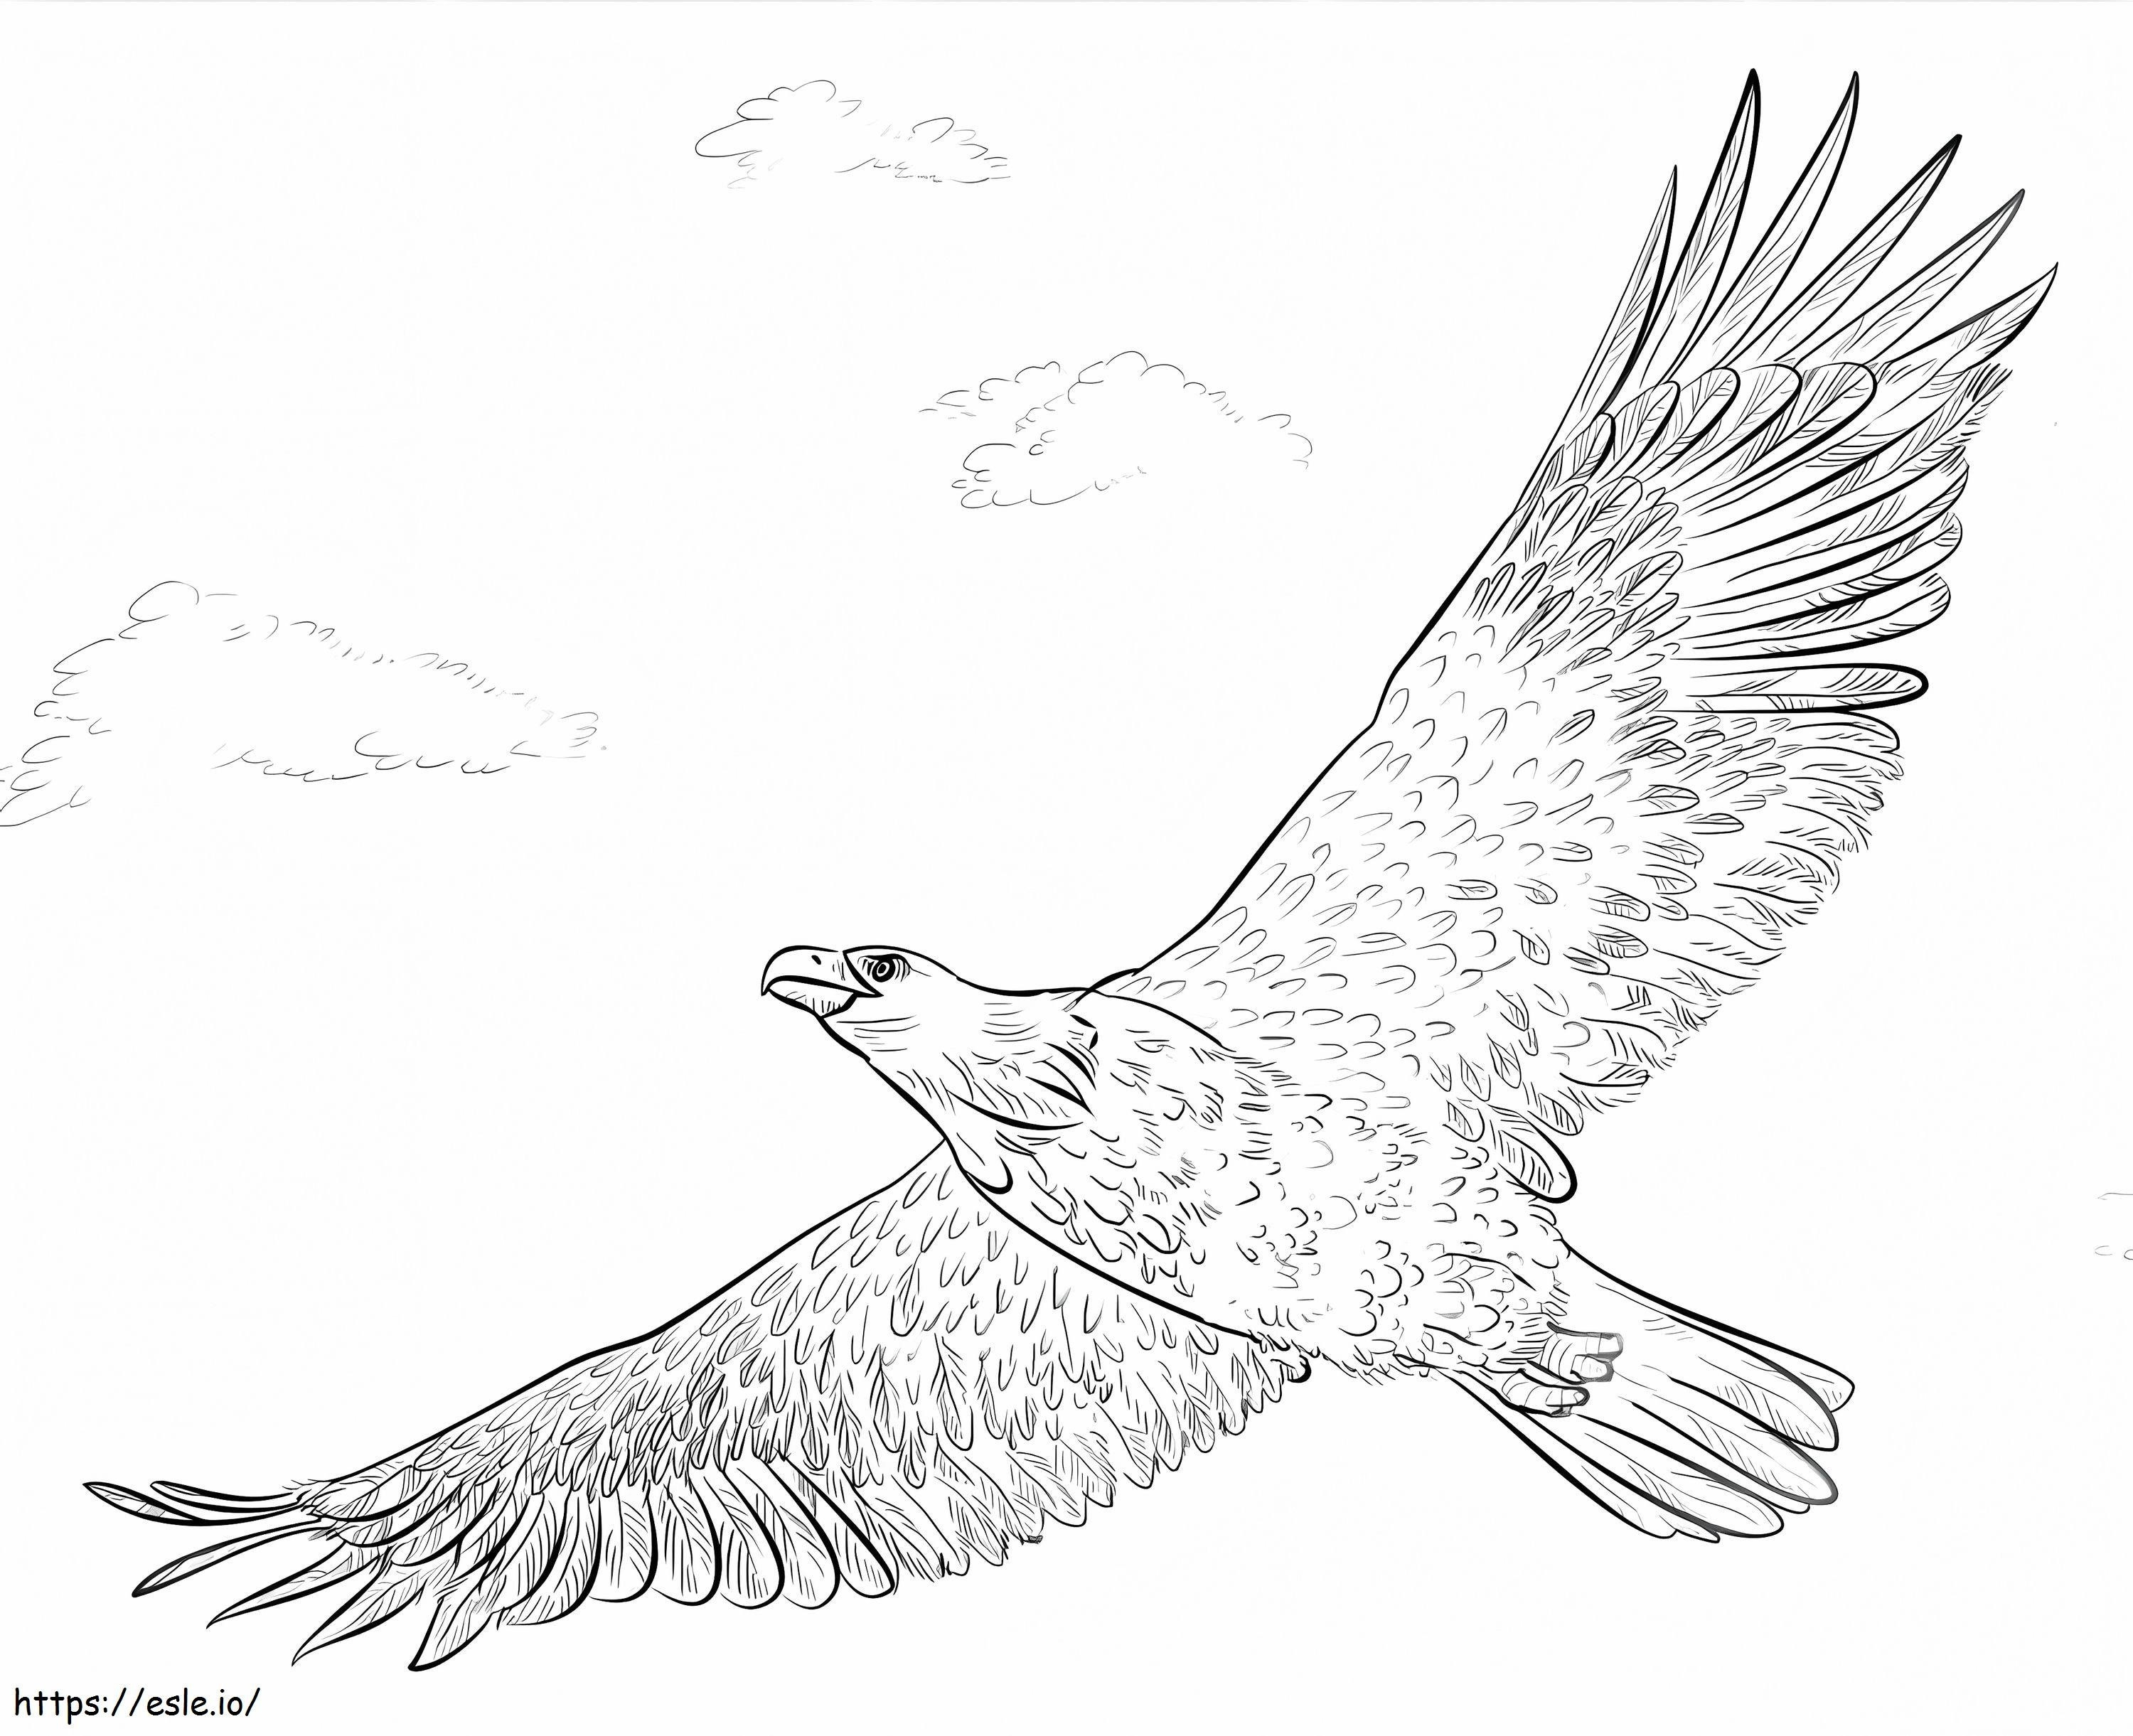 Águila calva en vuelo para colorear